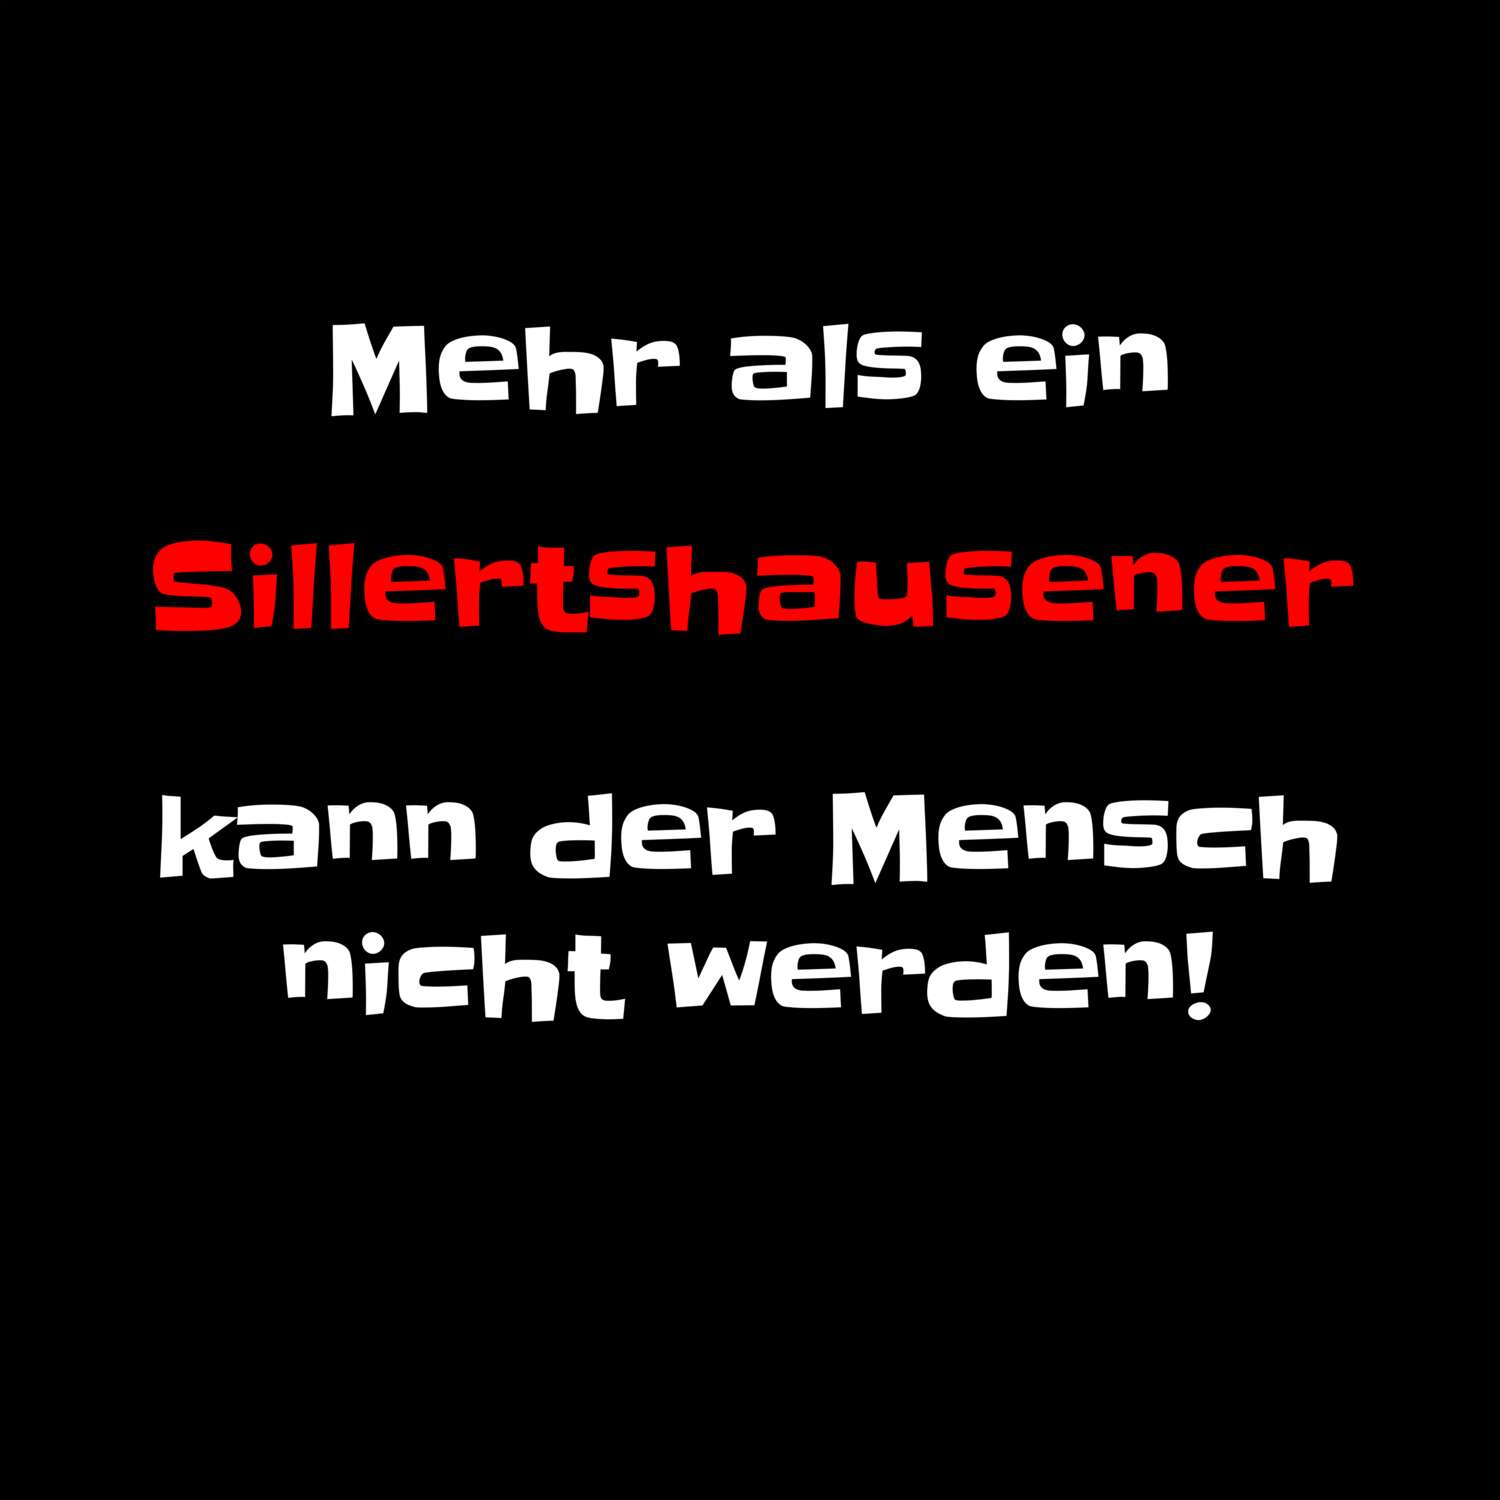 Sillertshausen T-Shirt »Mehr als ein«